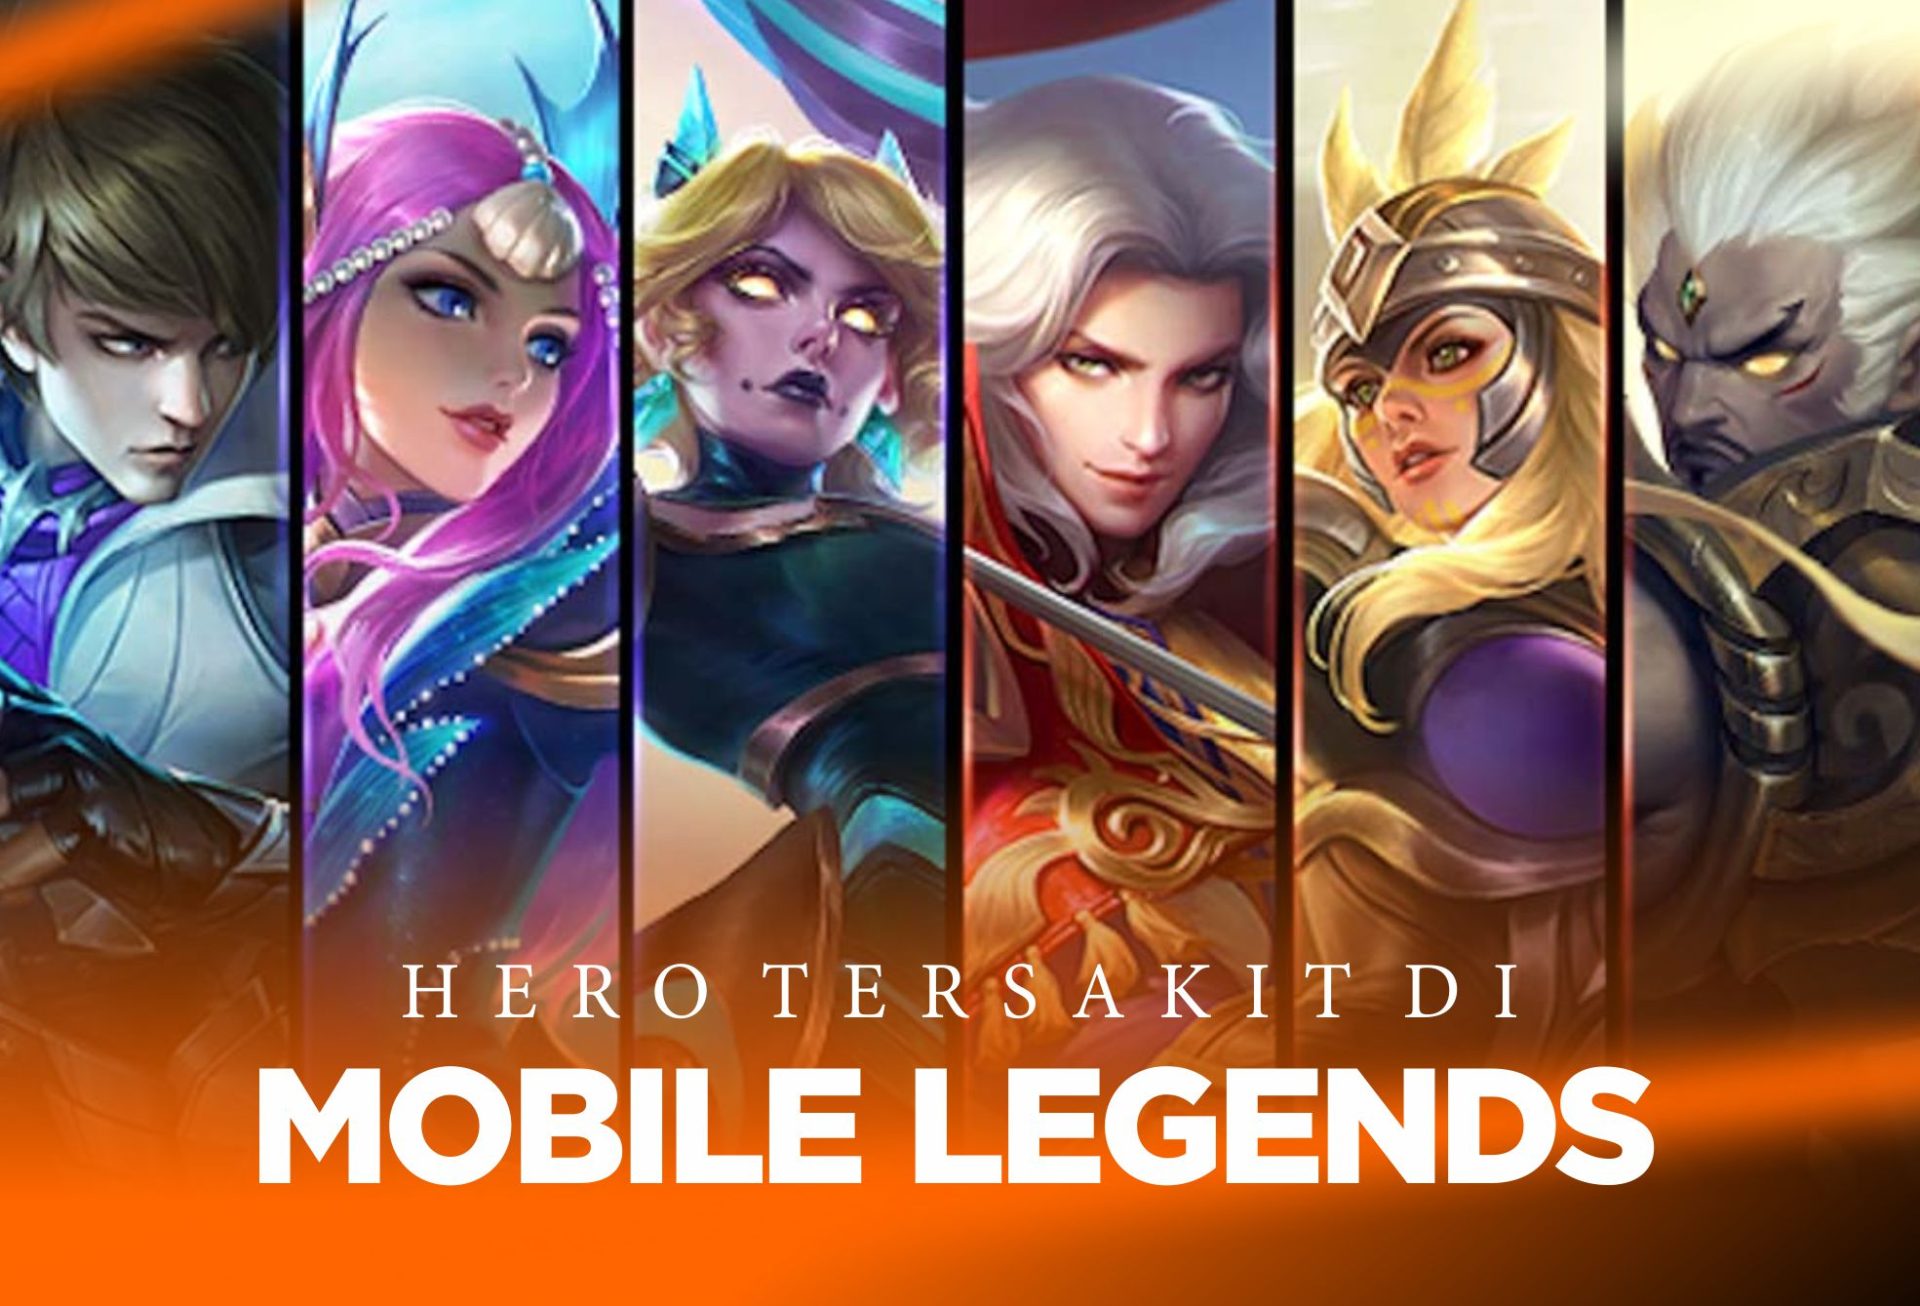 Hero Tersakit di Mobile Legends